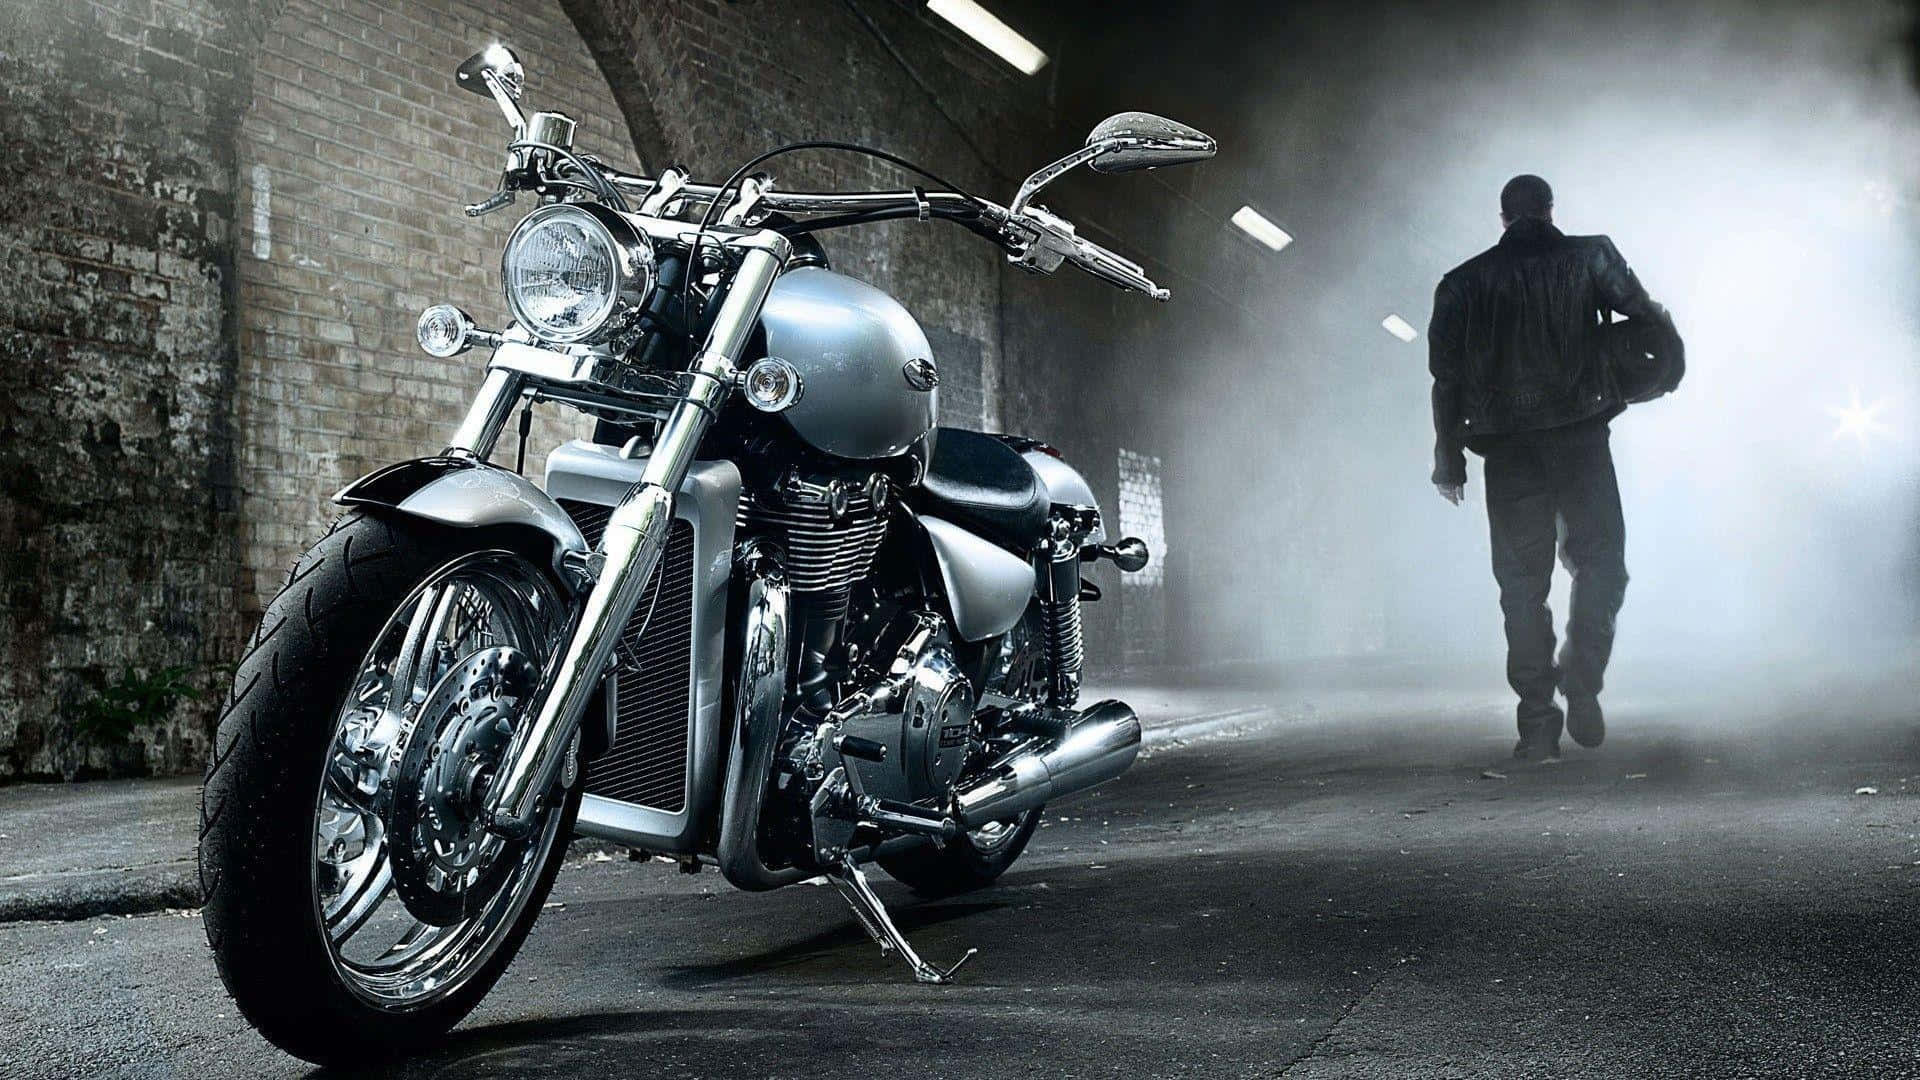 Harleydavidson Motor Und Hintergrund Mit Mann